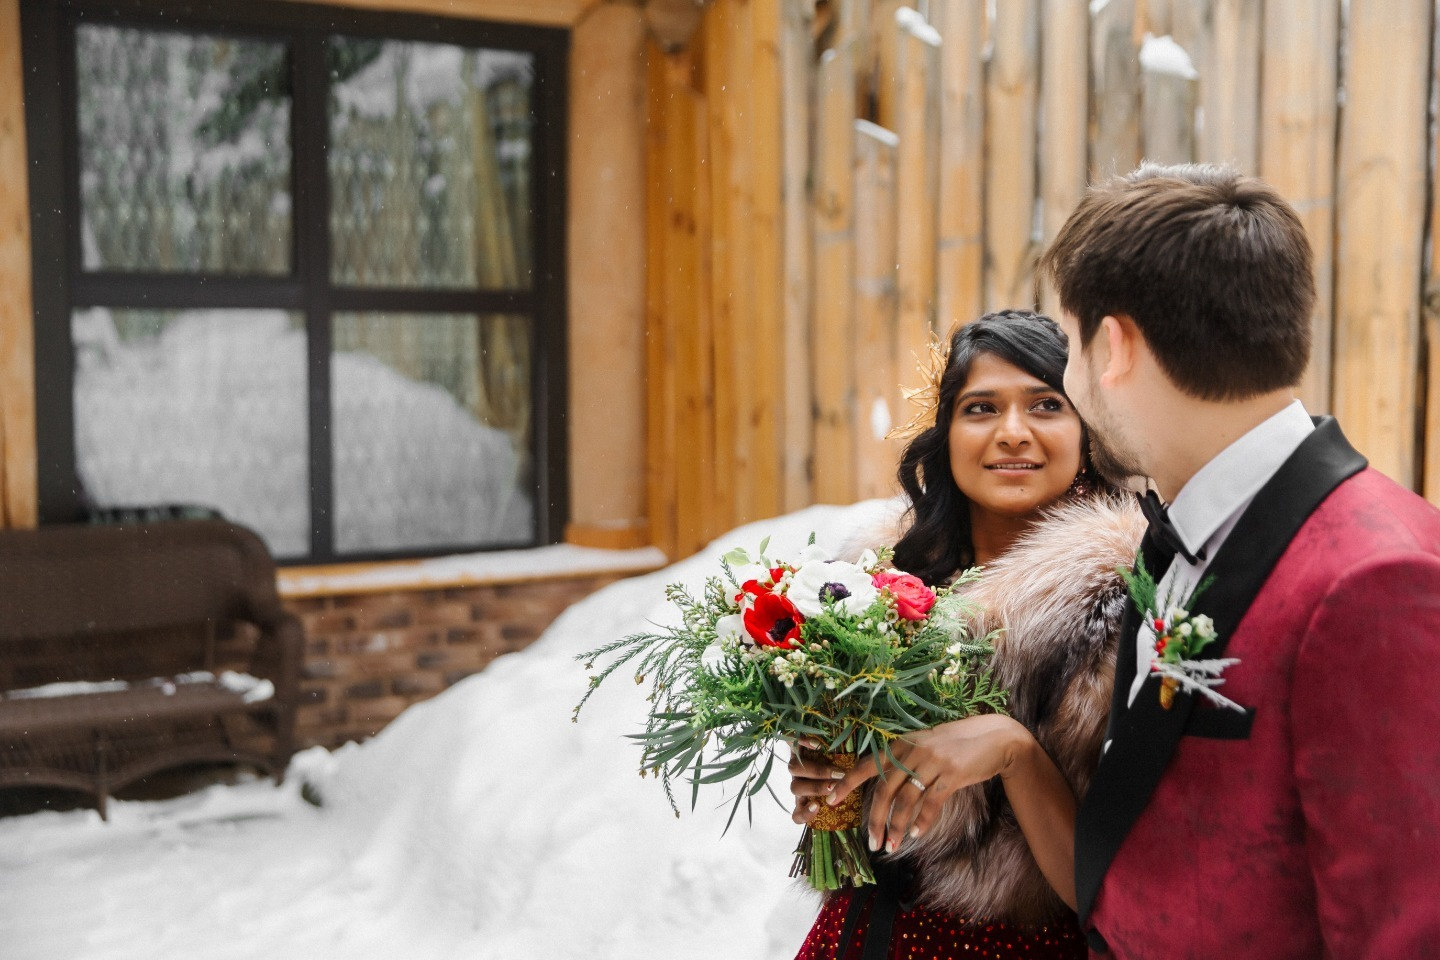 Зимняя сказка в красных тонах: русско-индийская свадьба